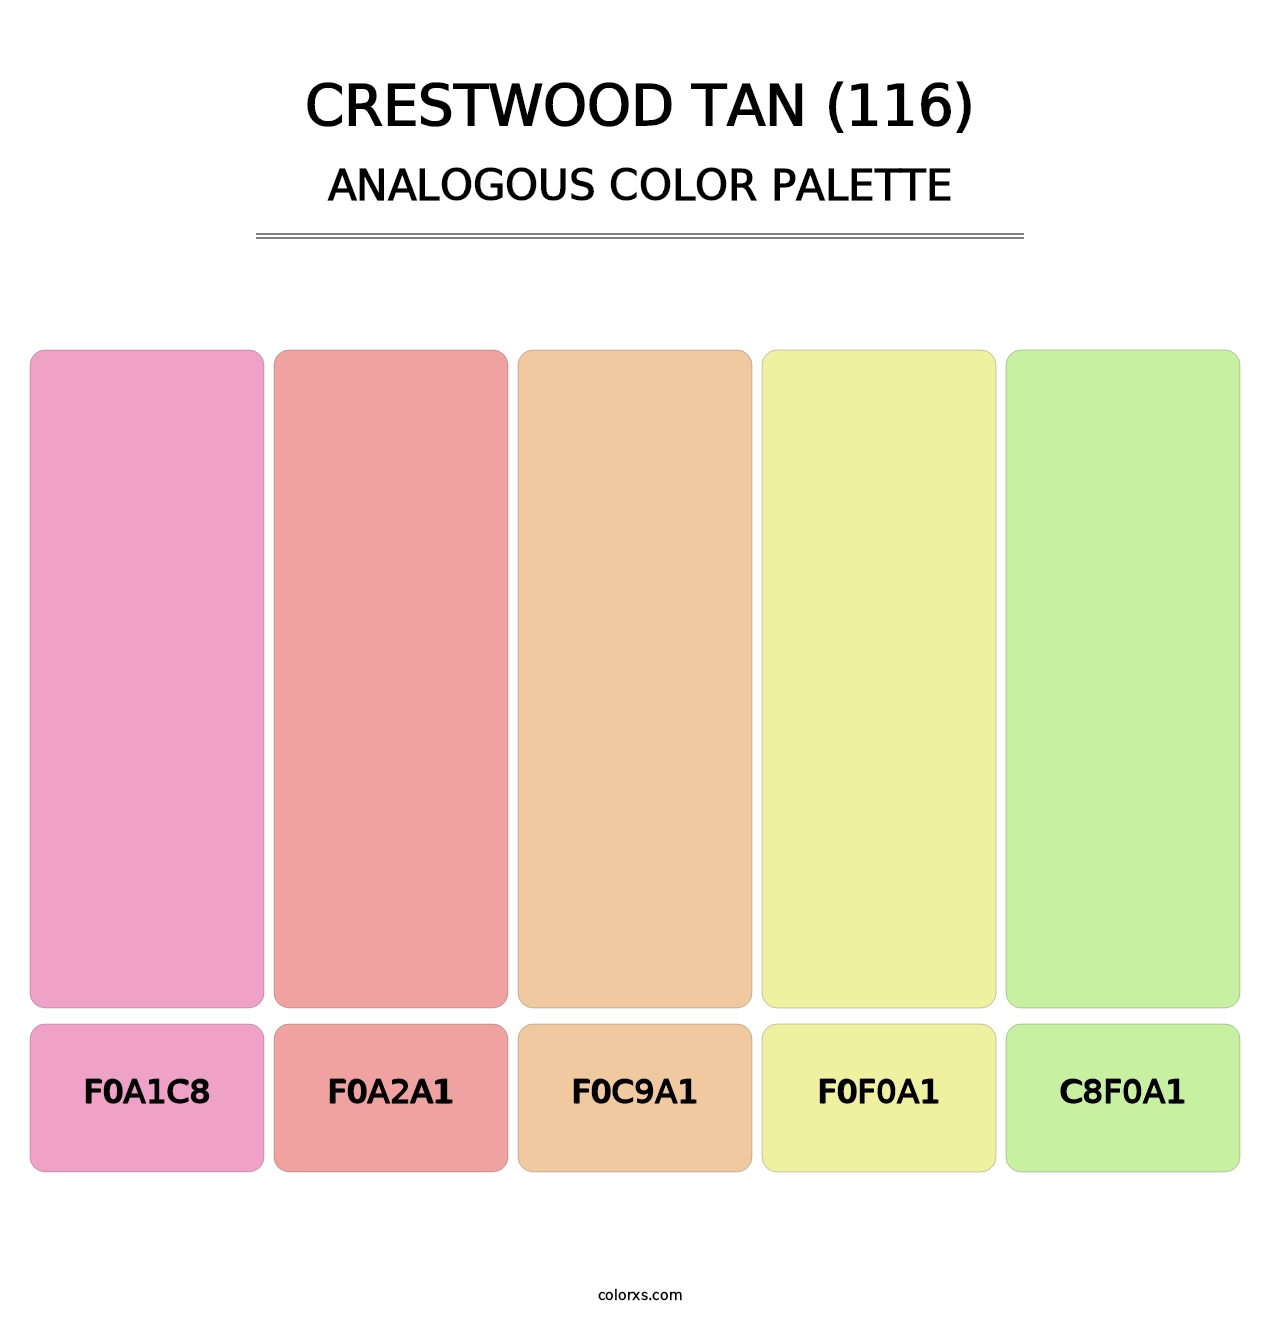 Crestwood Tan (116) - Analogous Color Palette